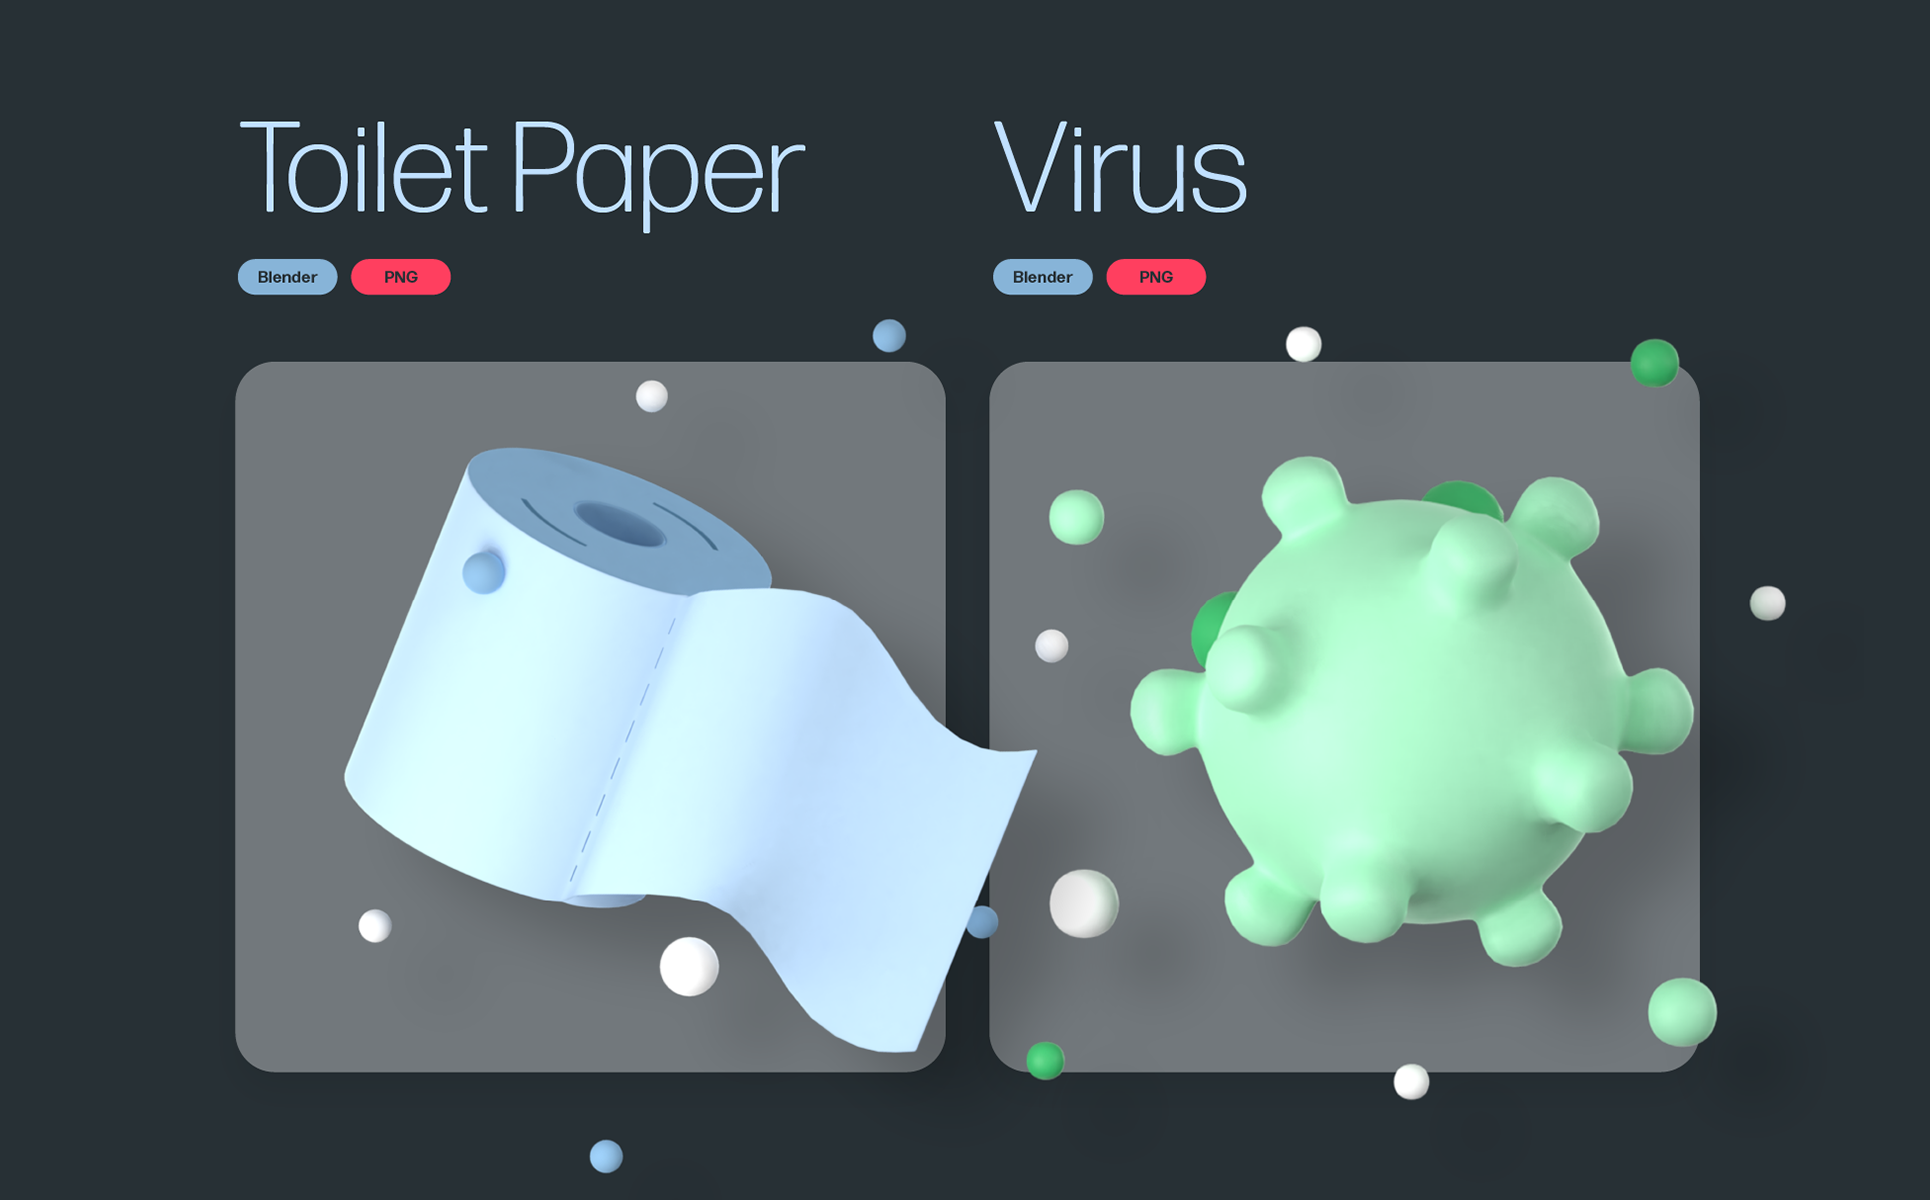 8款彩色卡通3D立体防疫抗病毒主题插画图标素材